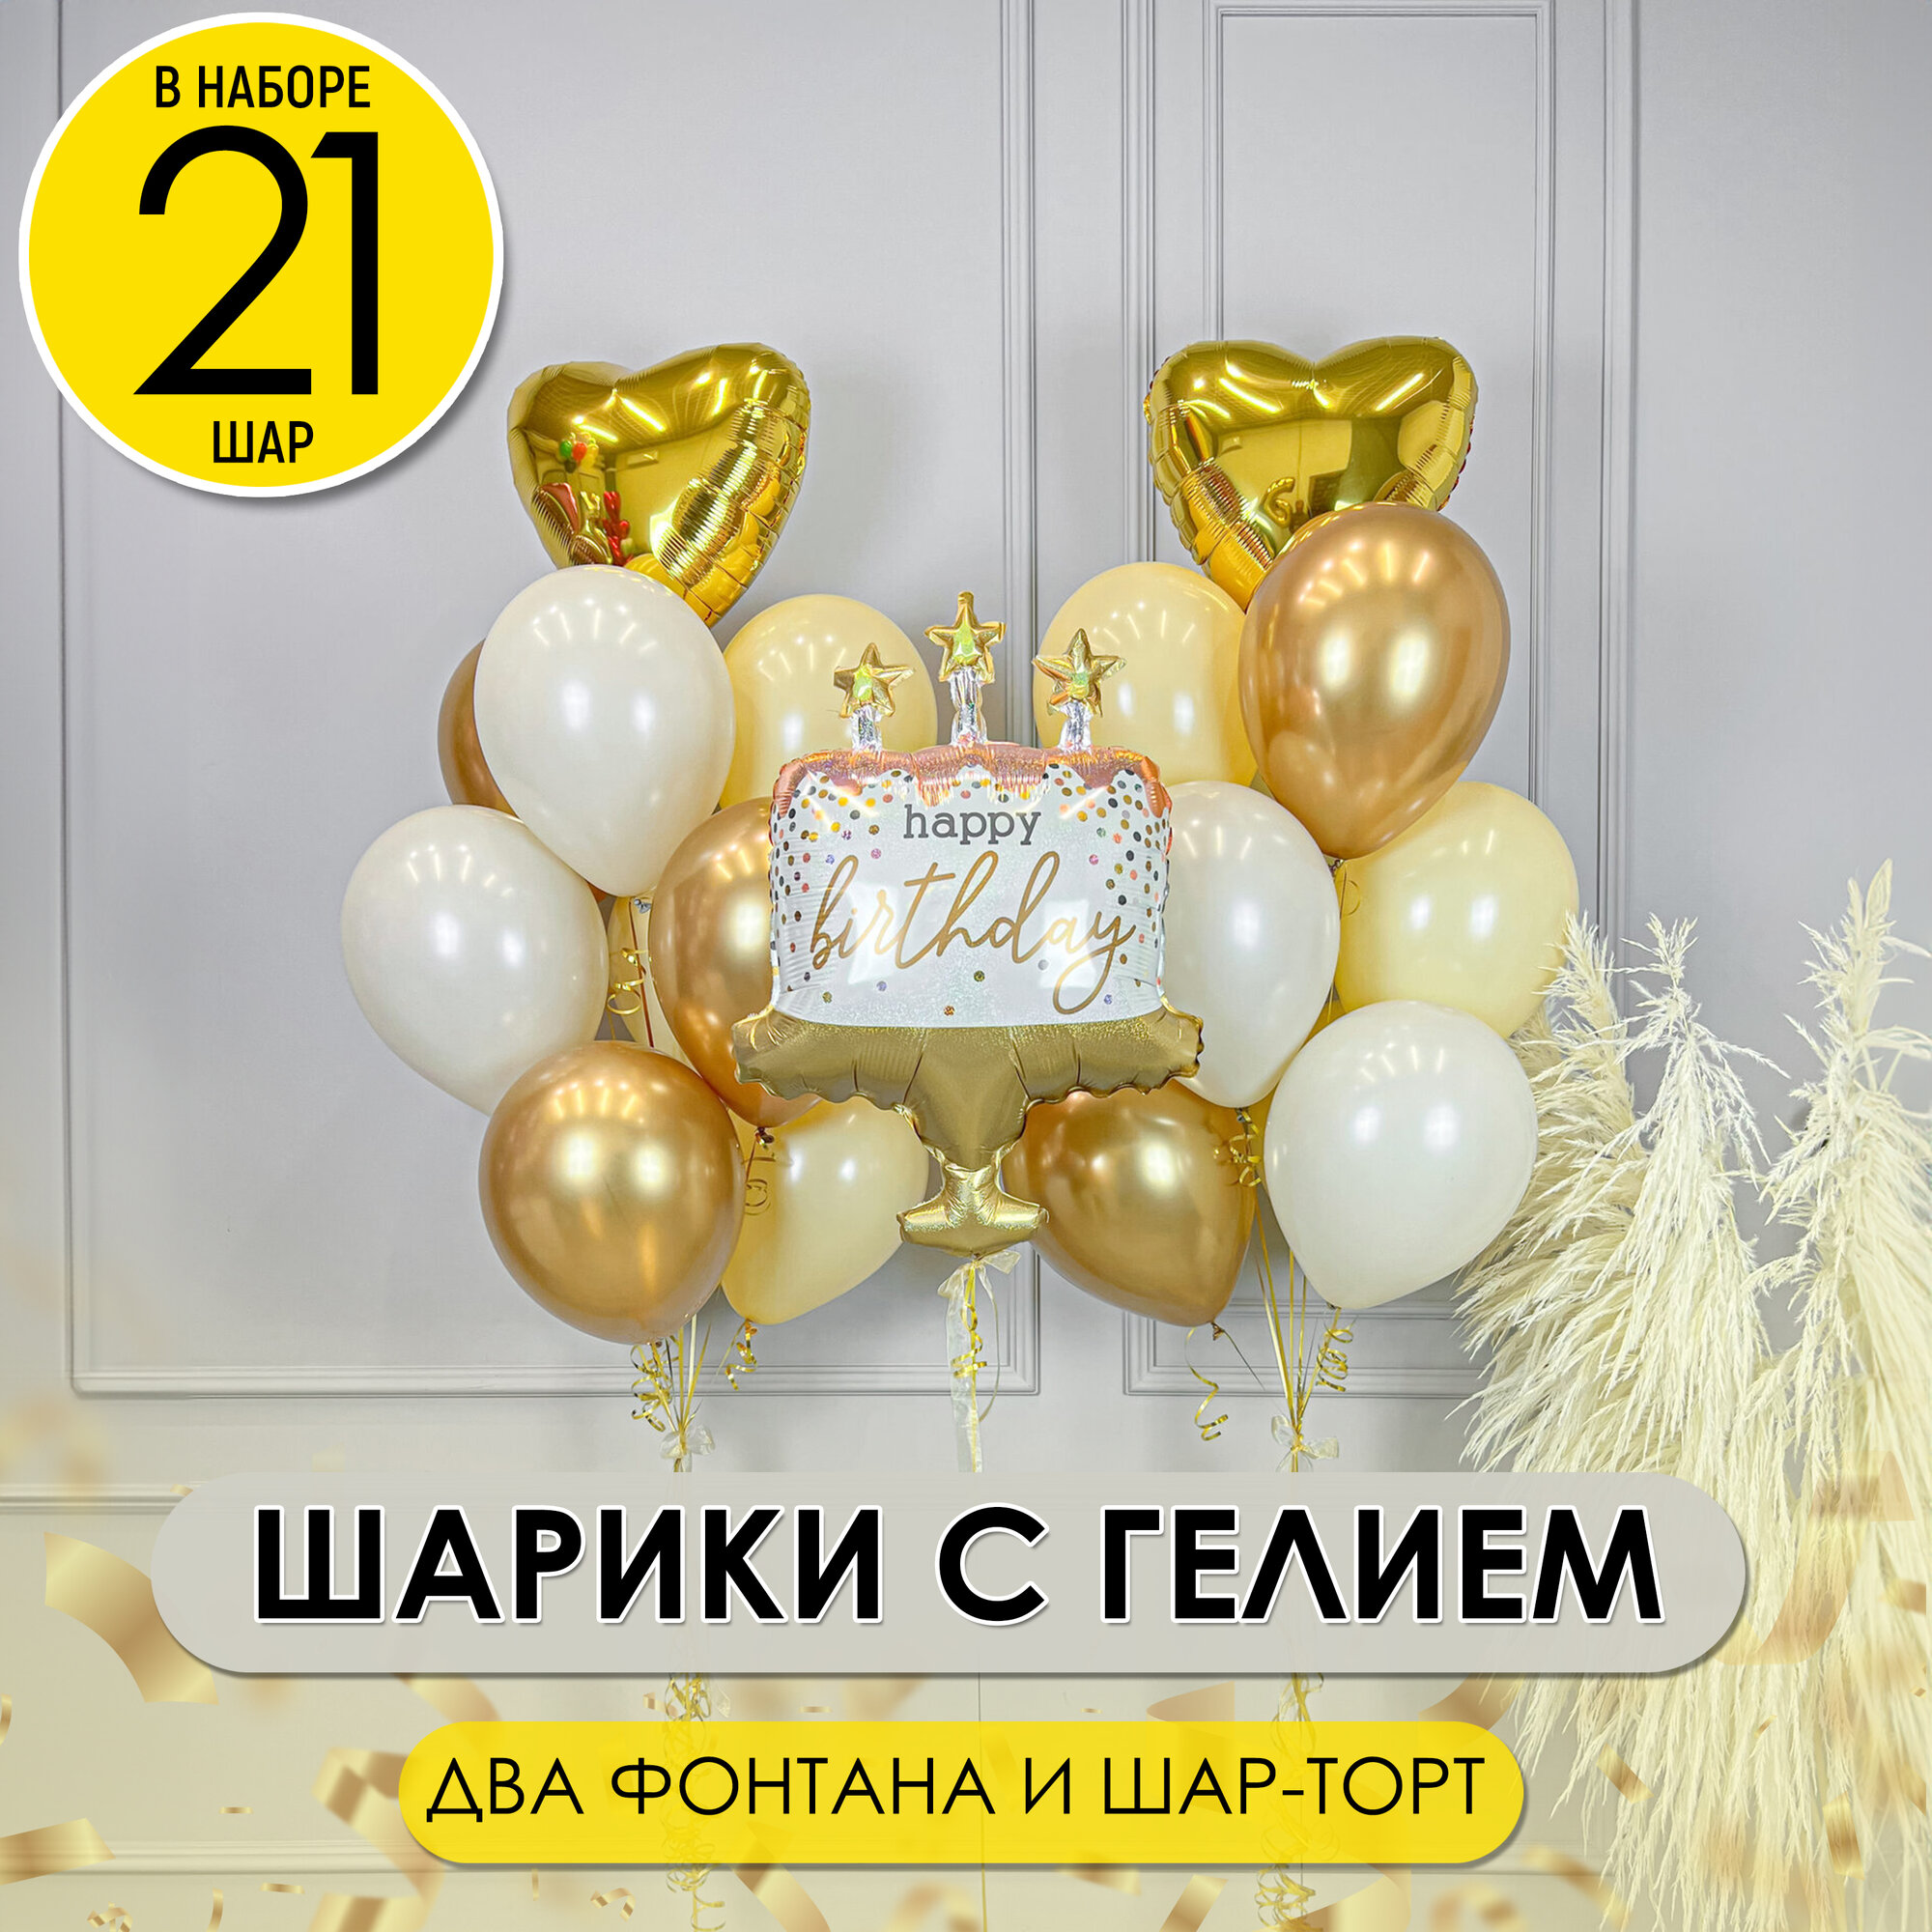 2 фонтана воздушных шаров с фольгированным шаром "Торт" на день рождения надутых гелием, 21 шт